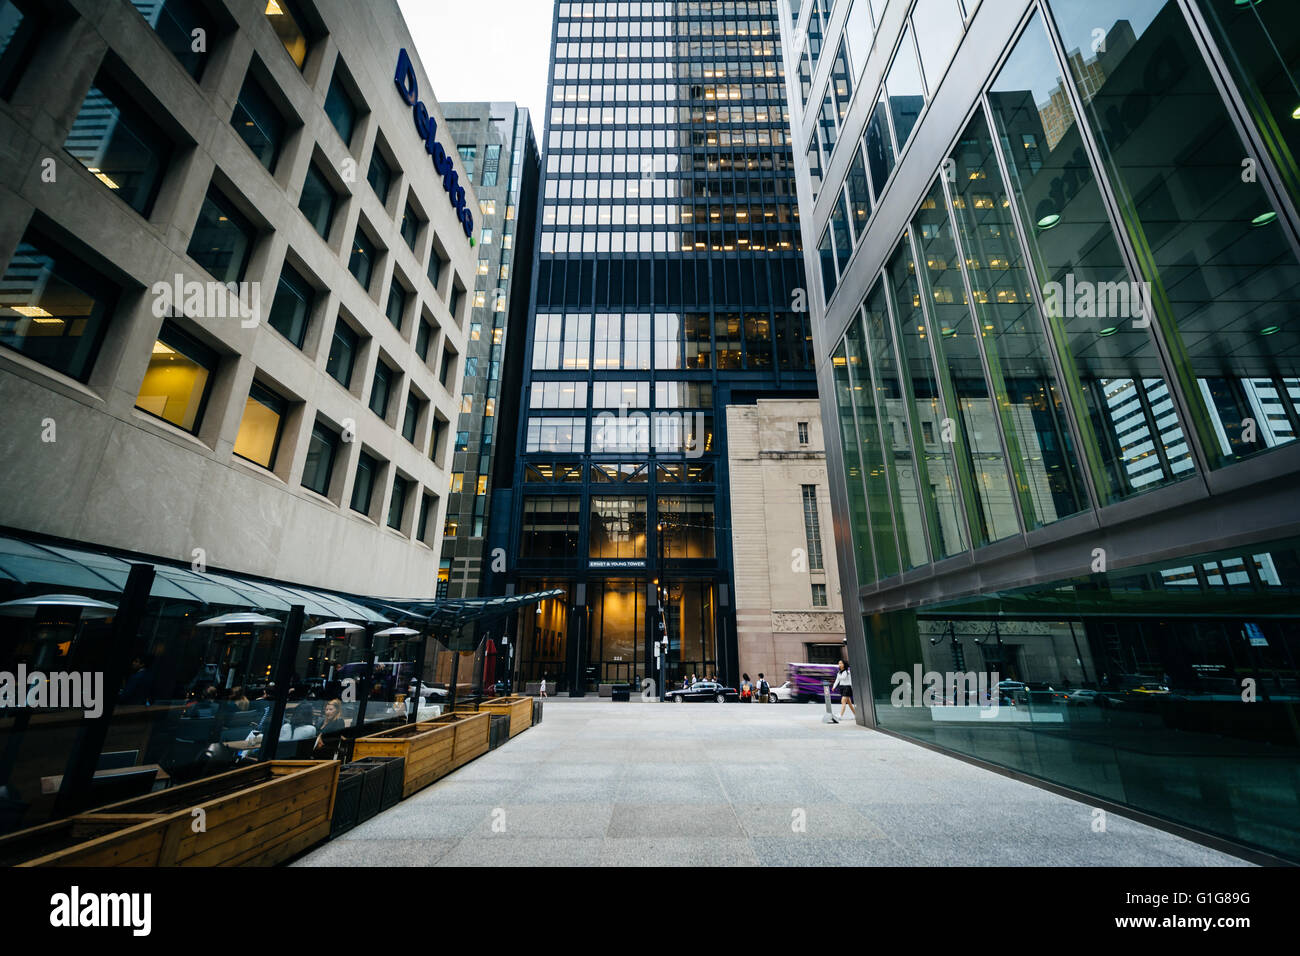 Les gratte-ciel modernes dans le quartier financier du centre-ville de Toronto, Ontario. Banque D'Images